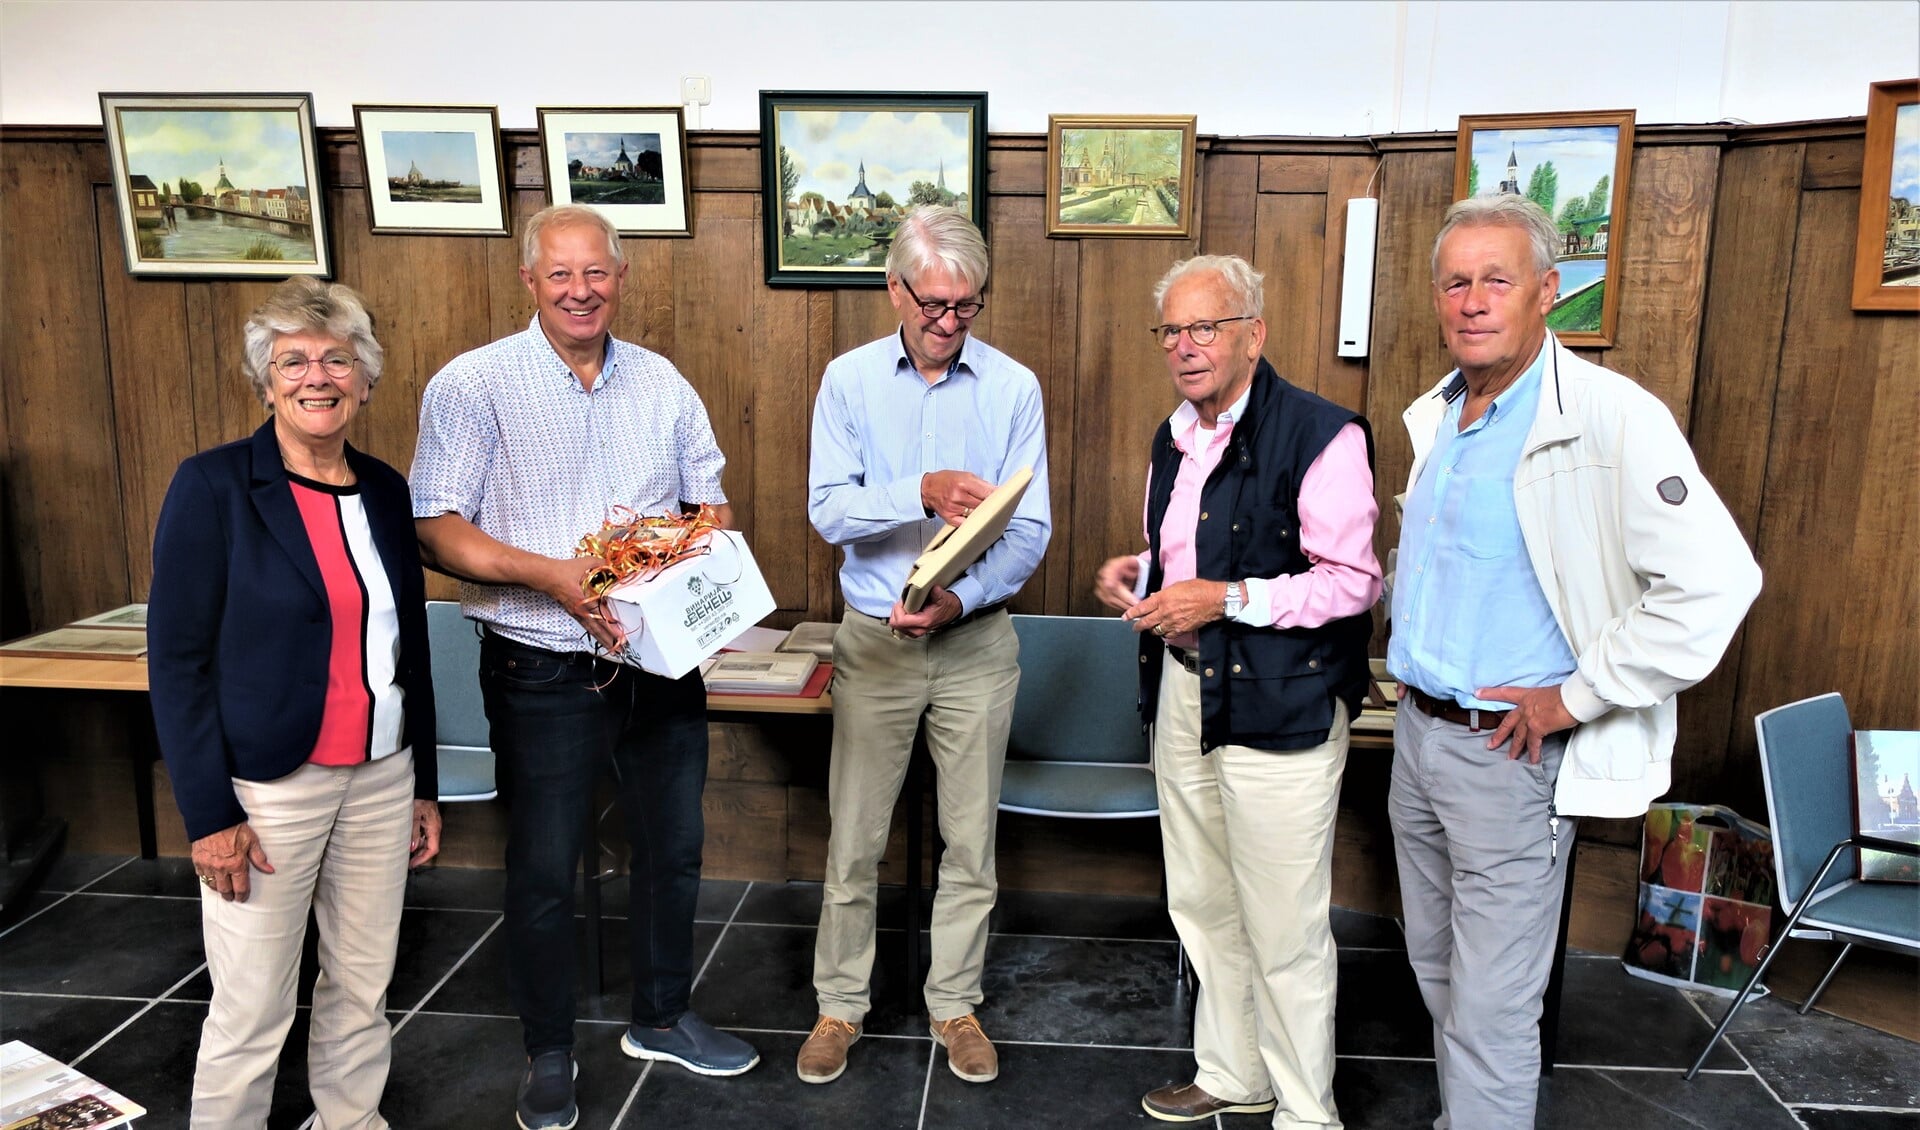 De symbolische overhandiging van de collectie door Johan van Reisen (tweede van rechts) aan de stichting (foto: Vrienden van de Dorpskerk).